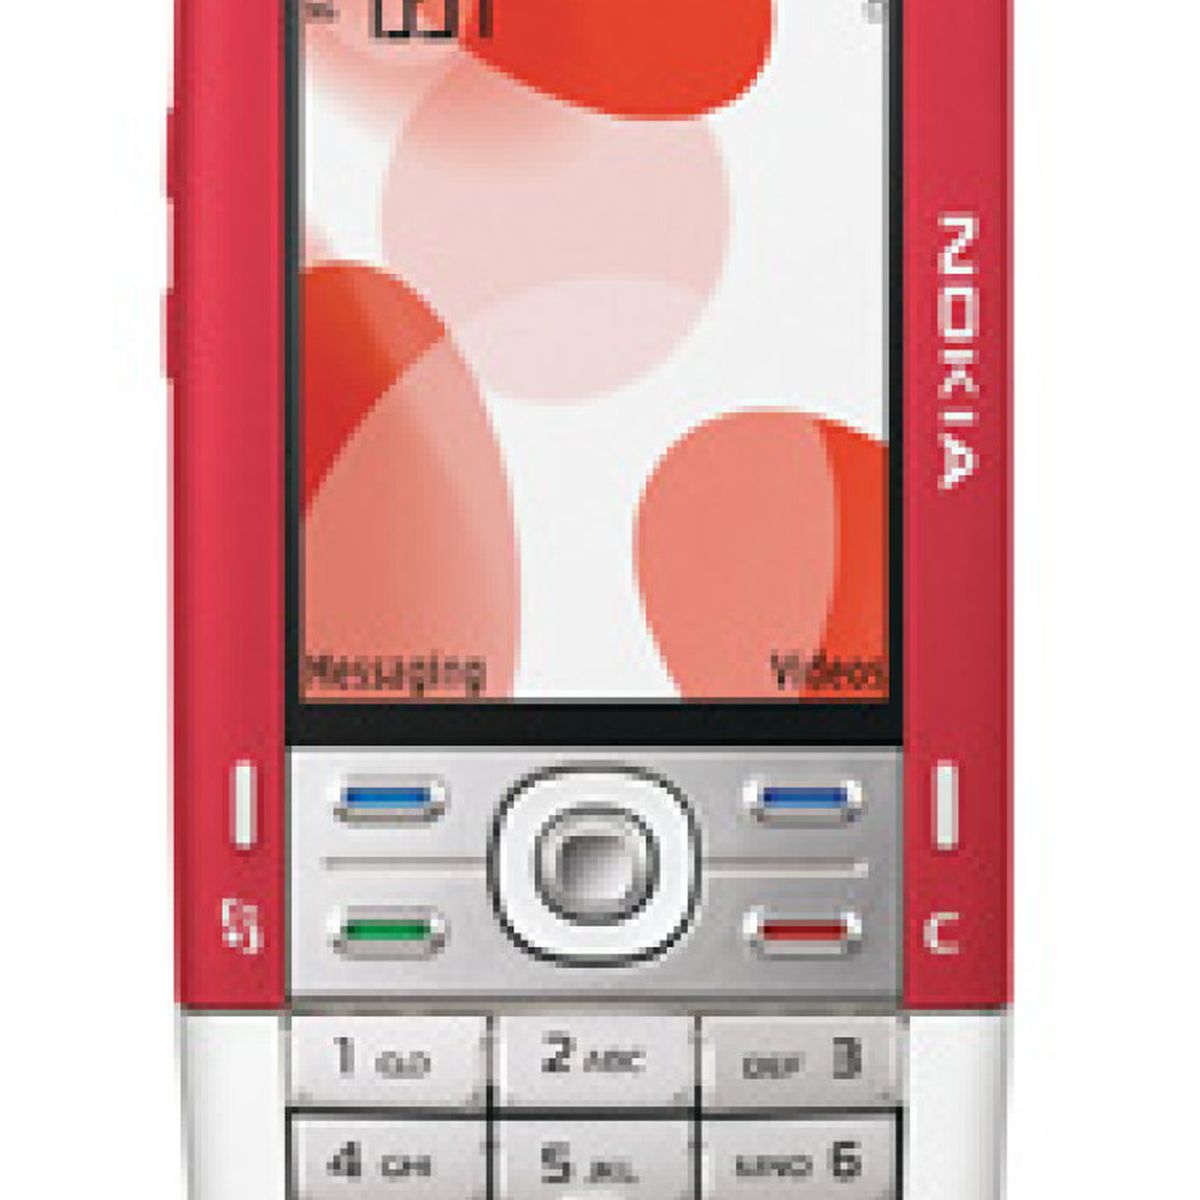 Nokia trae de vuelta uno de sus teléfonos más míticos: ahora es un móvil-MP3  con